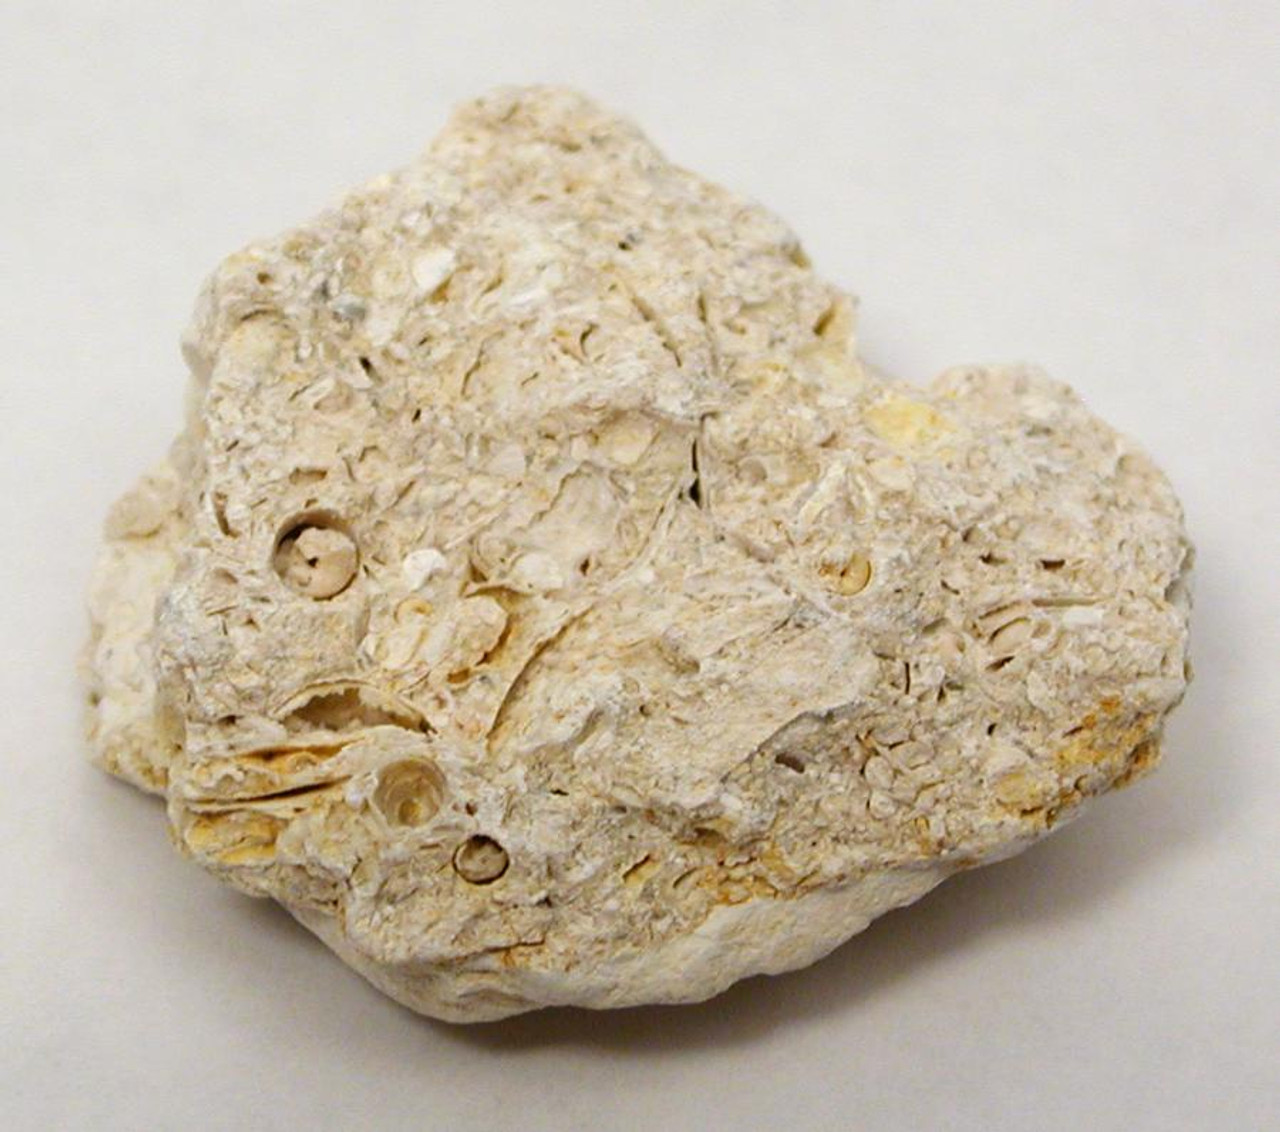 oolitic limestone